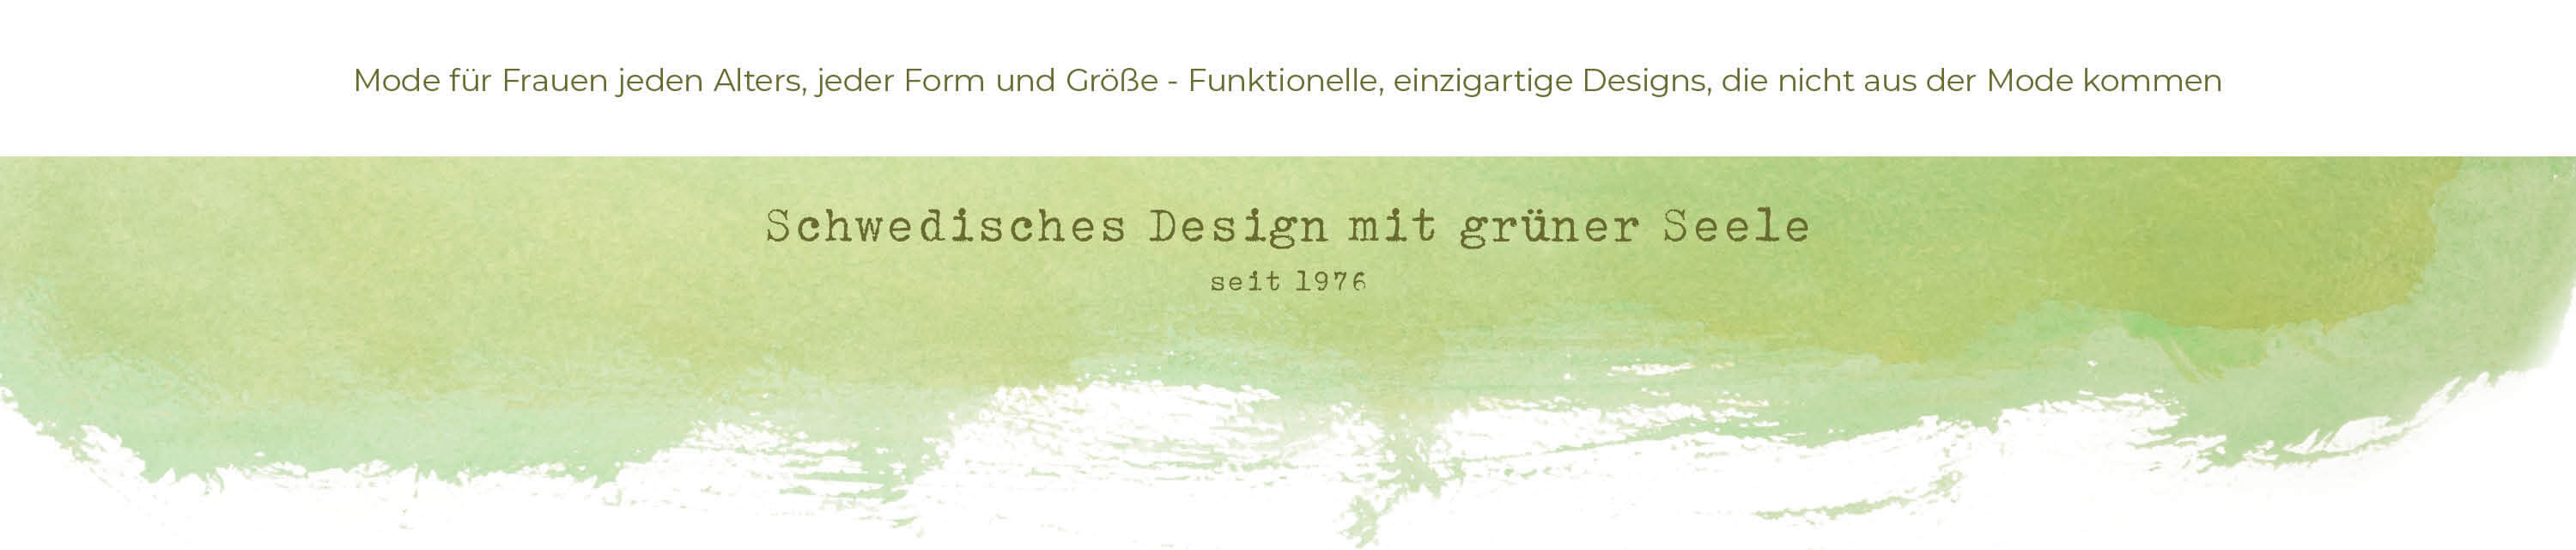 Schwedisches Design mit grüner Seele seit 1976